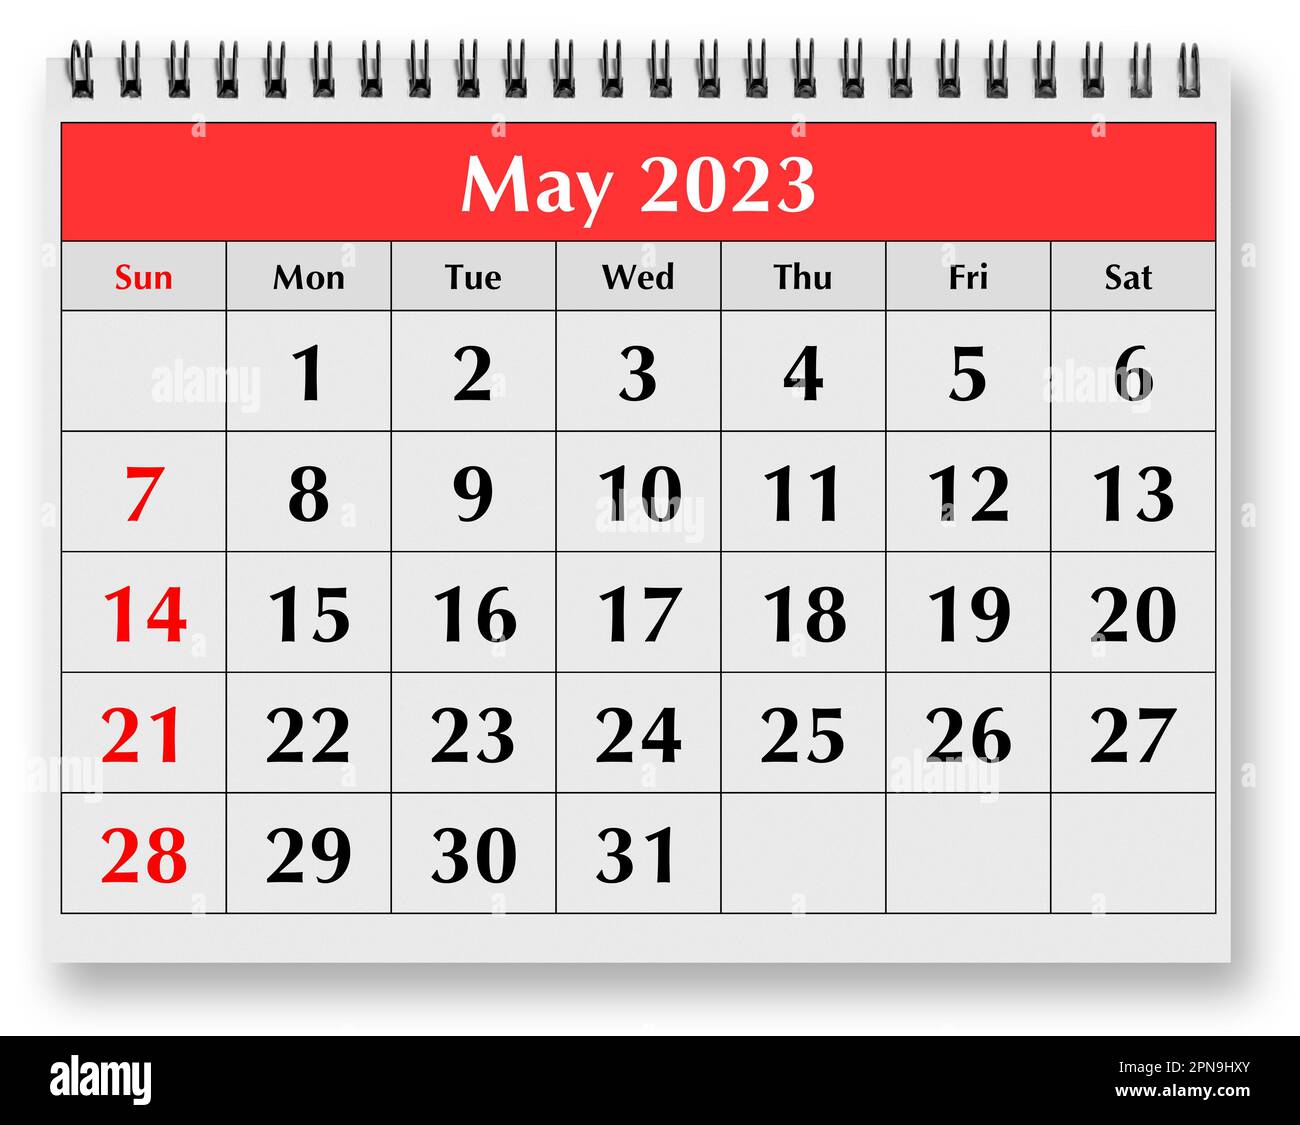 Almanaque De Mayo 2023 Mayo 2023 Imágenes recortadas de stock - Alamy